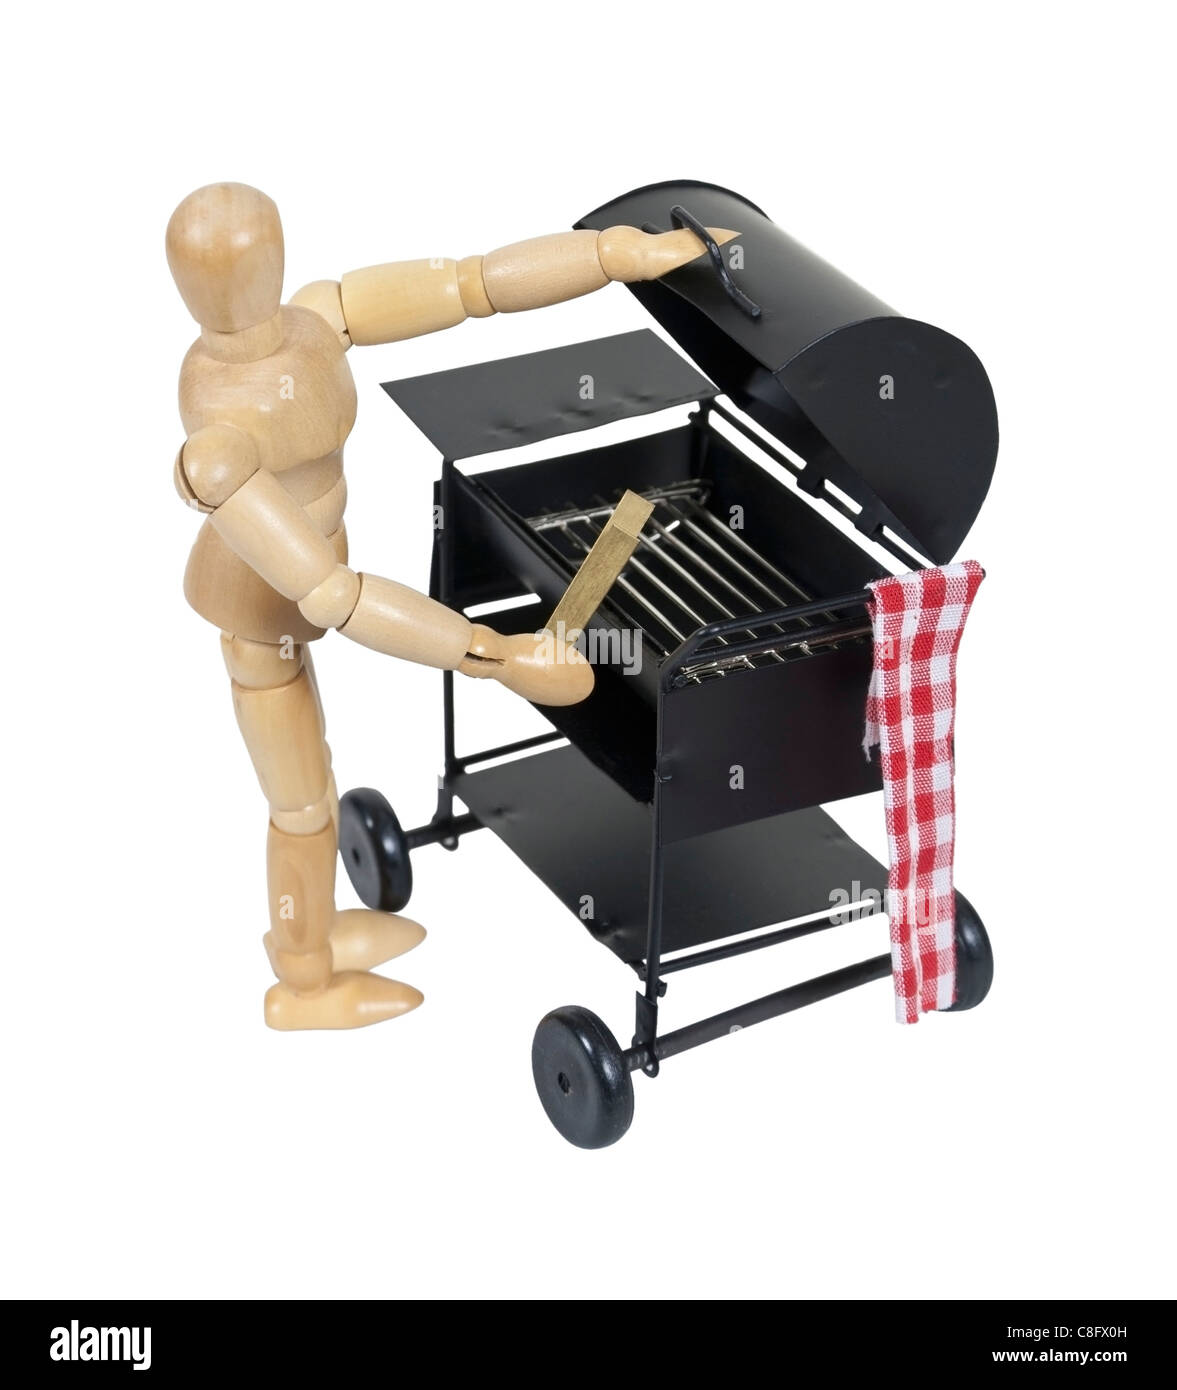 Préparer le barbecue pour la cuisson des aliments au barbecue - chemin inclus Banque D'Images